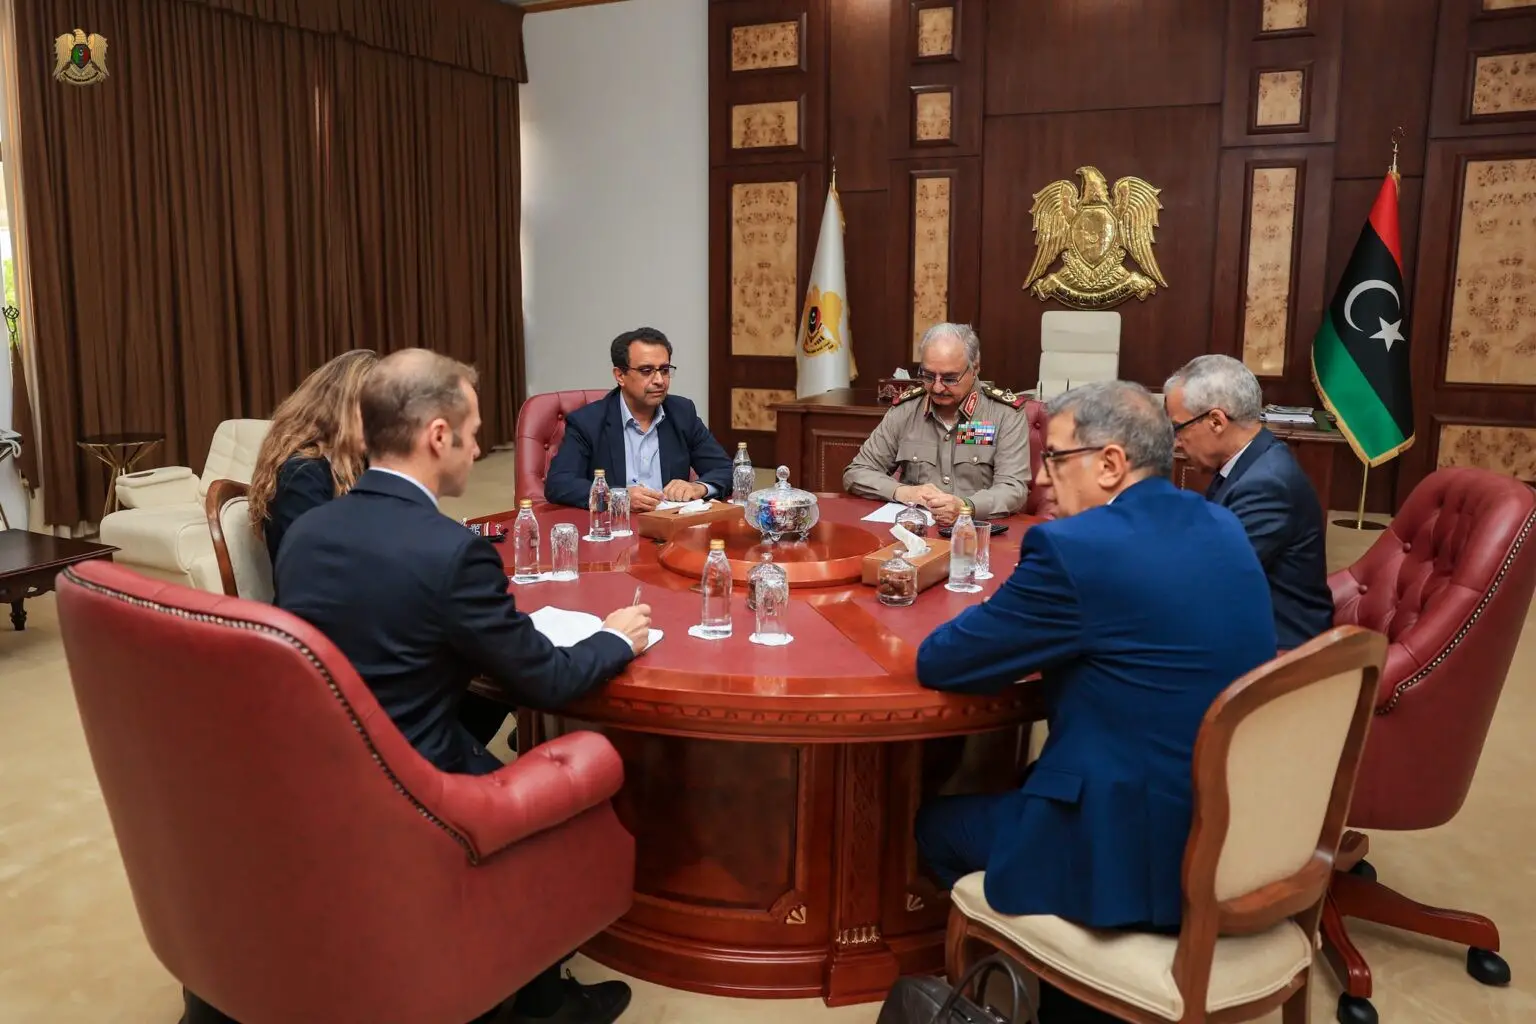 Libye : Haftar parle de lutte contre le terrorisme avec des diplomates français